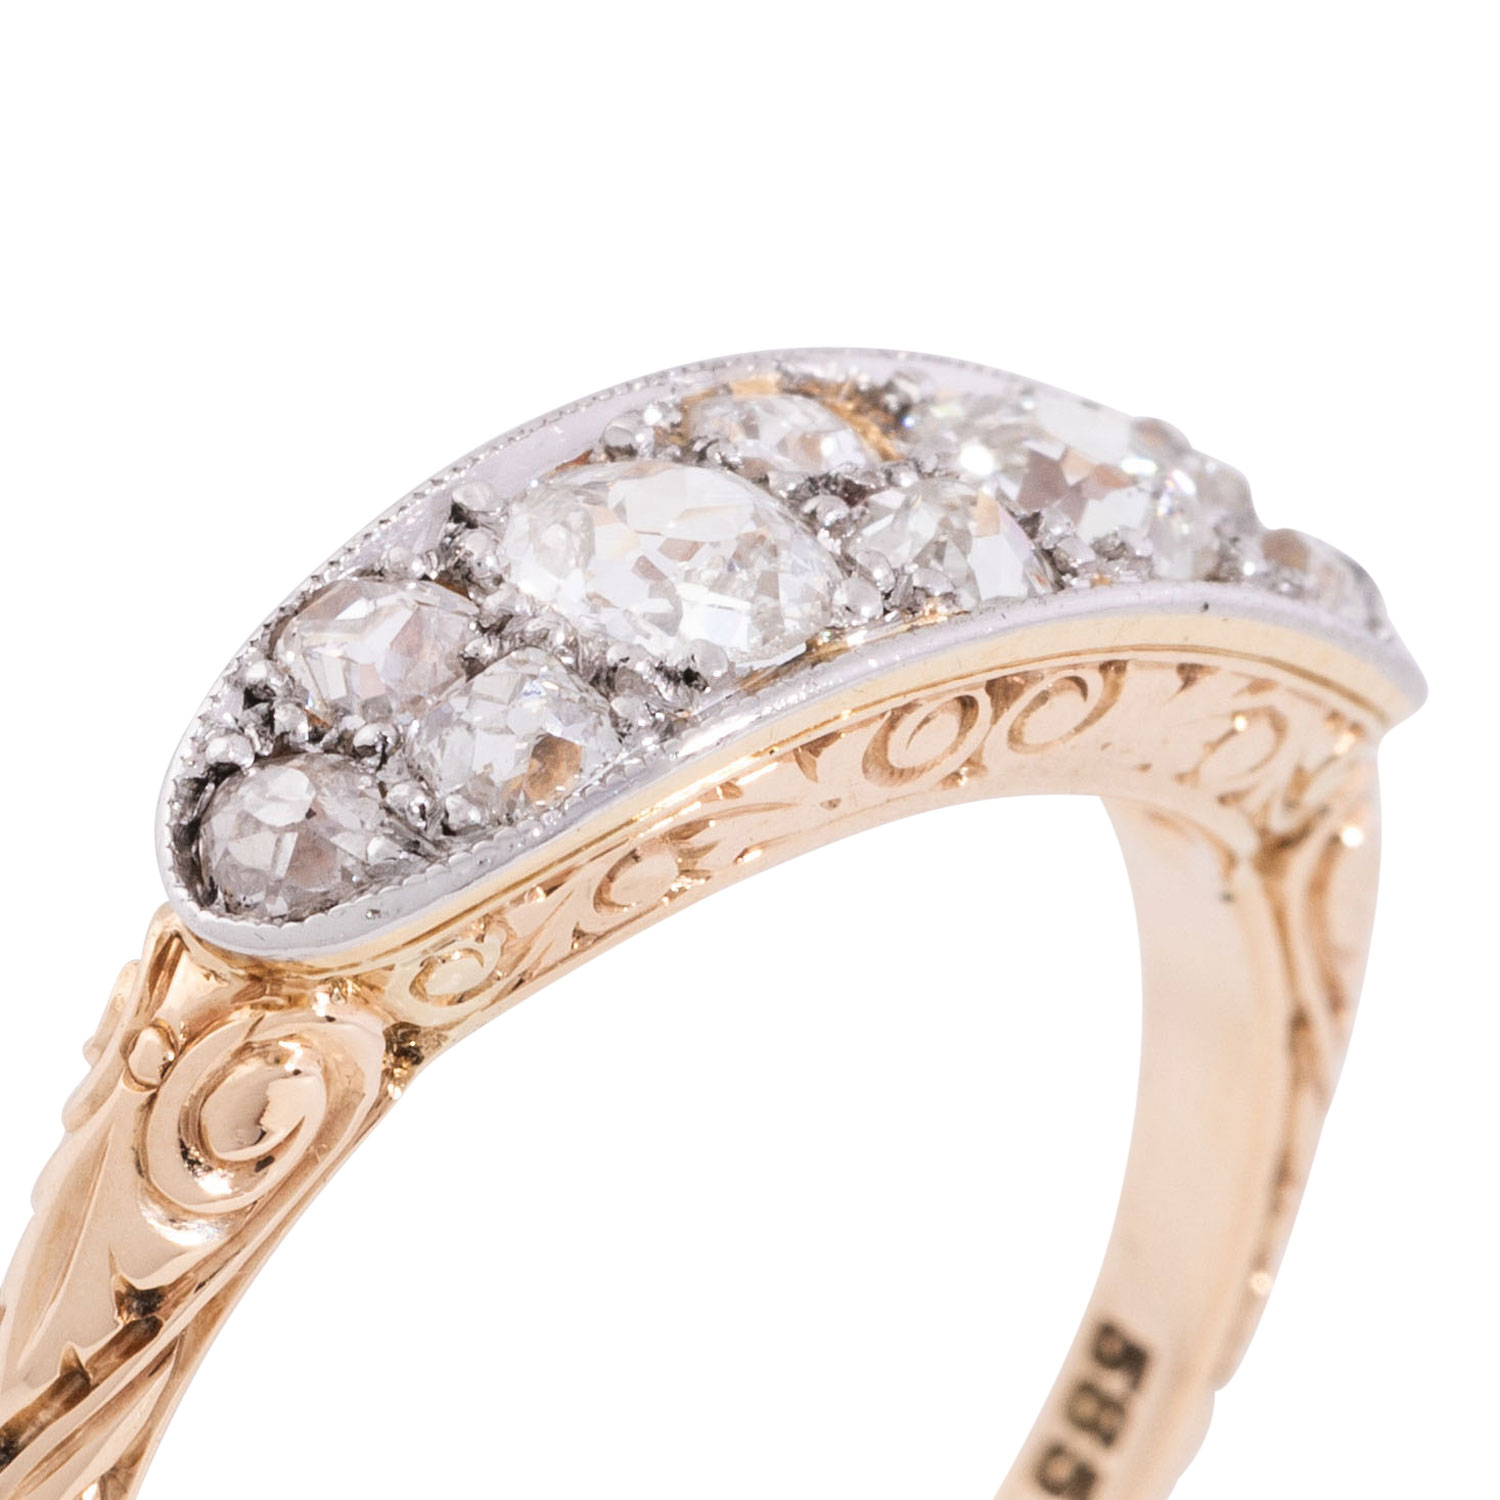 Ring mit Altschliffdiamanten von zus. ca. 0,8 ct, - Image 4 of 4